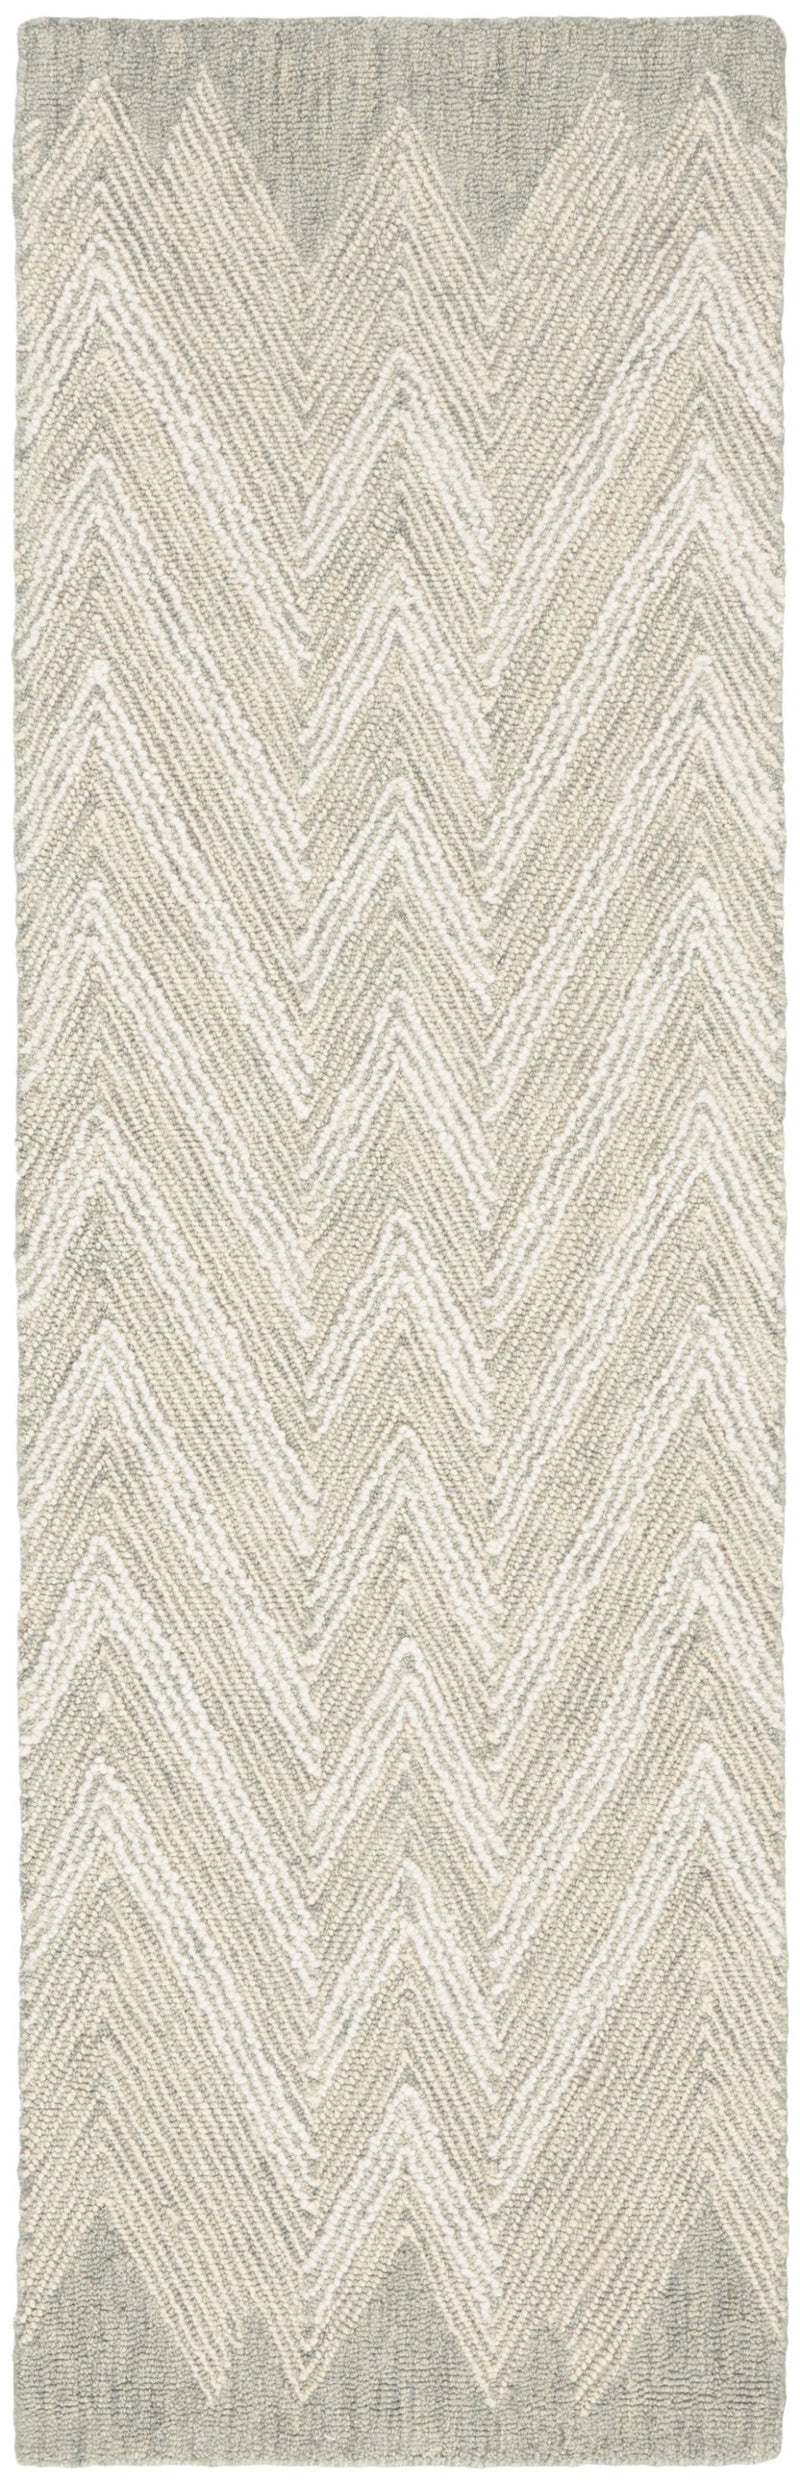 media image for interlock handmade teal rug by nourison 99446015488 redo 2 239